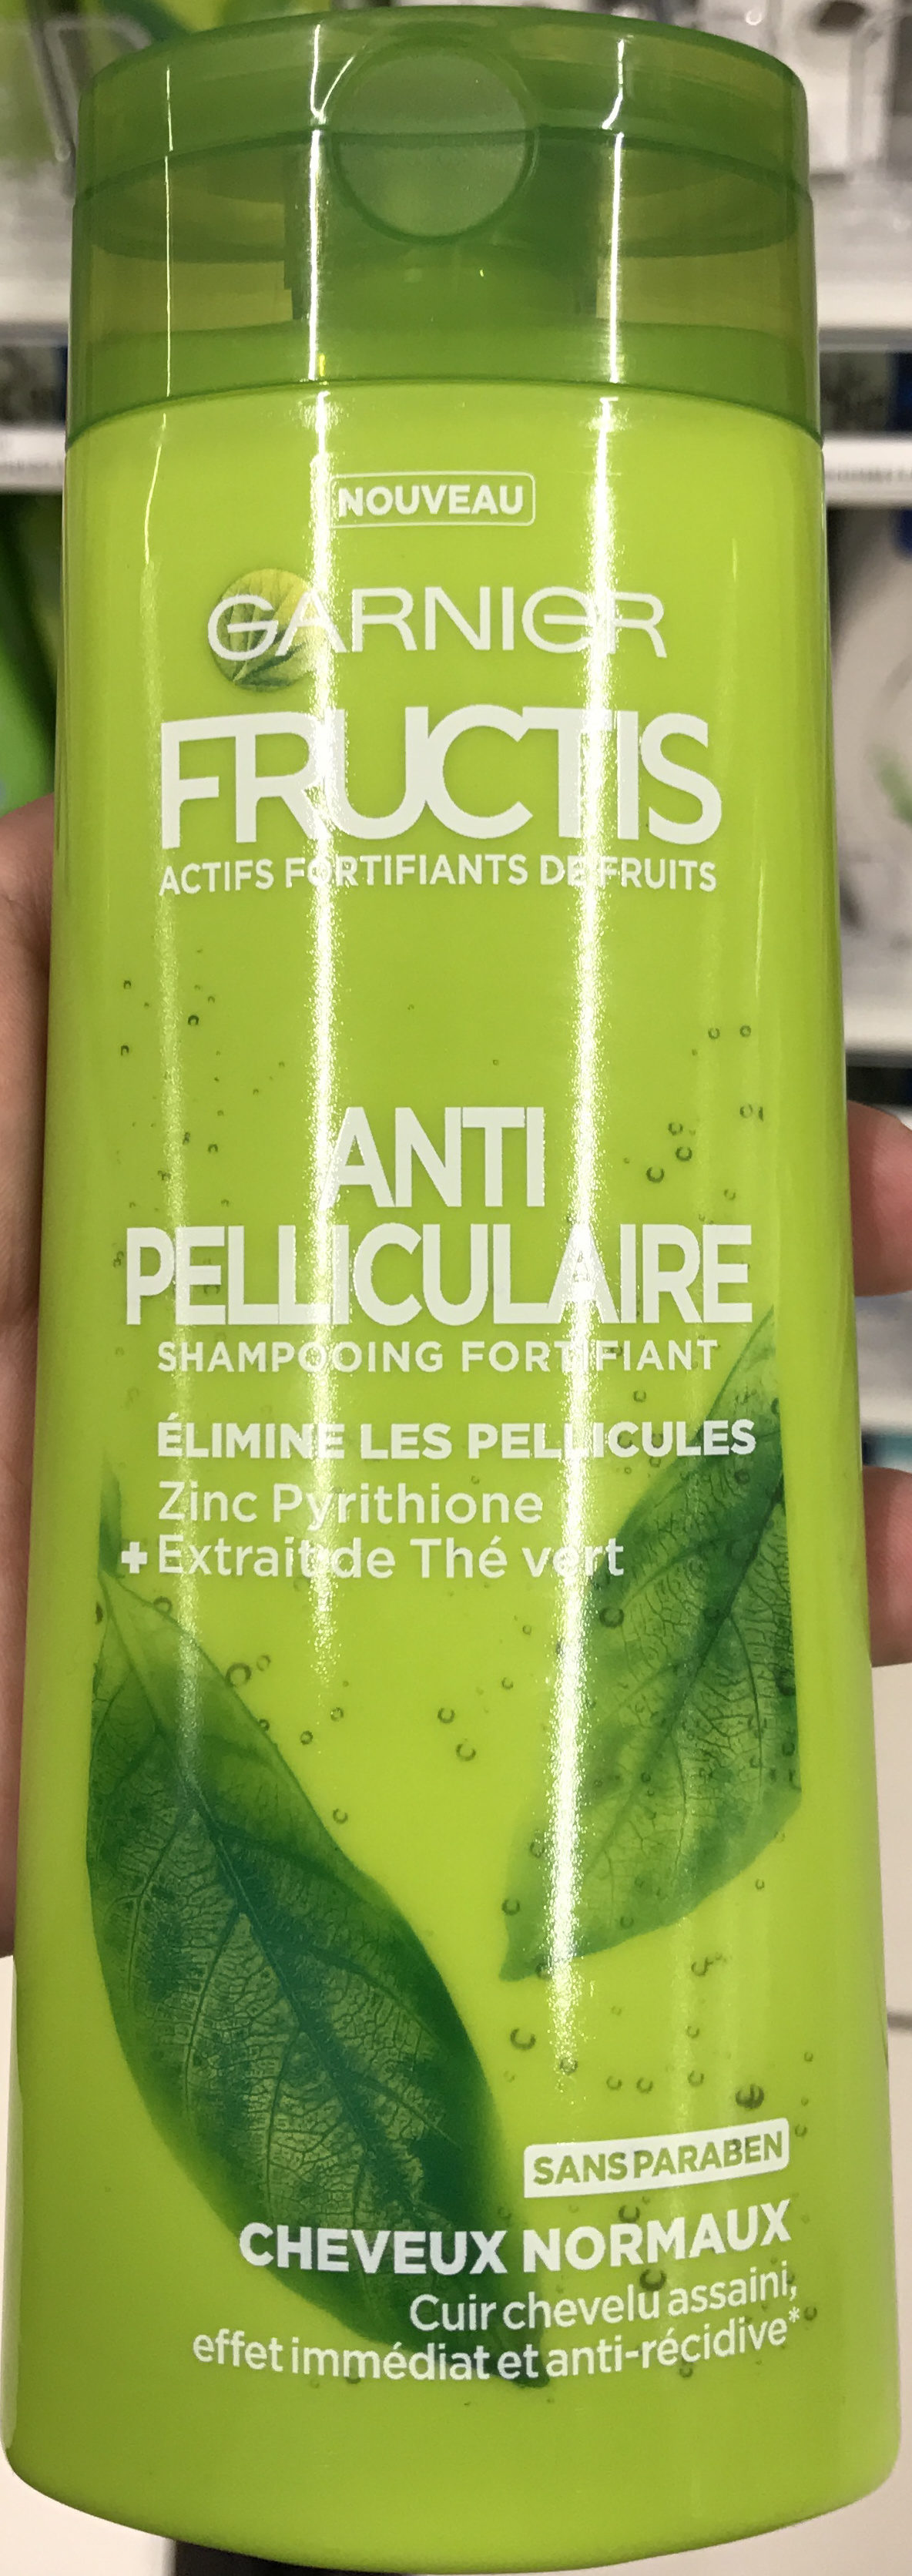 Fructis Anti-Pelliculaire - Produto - fr